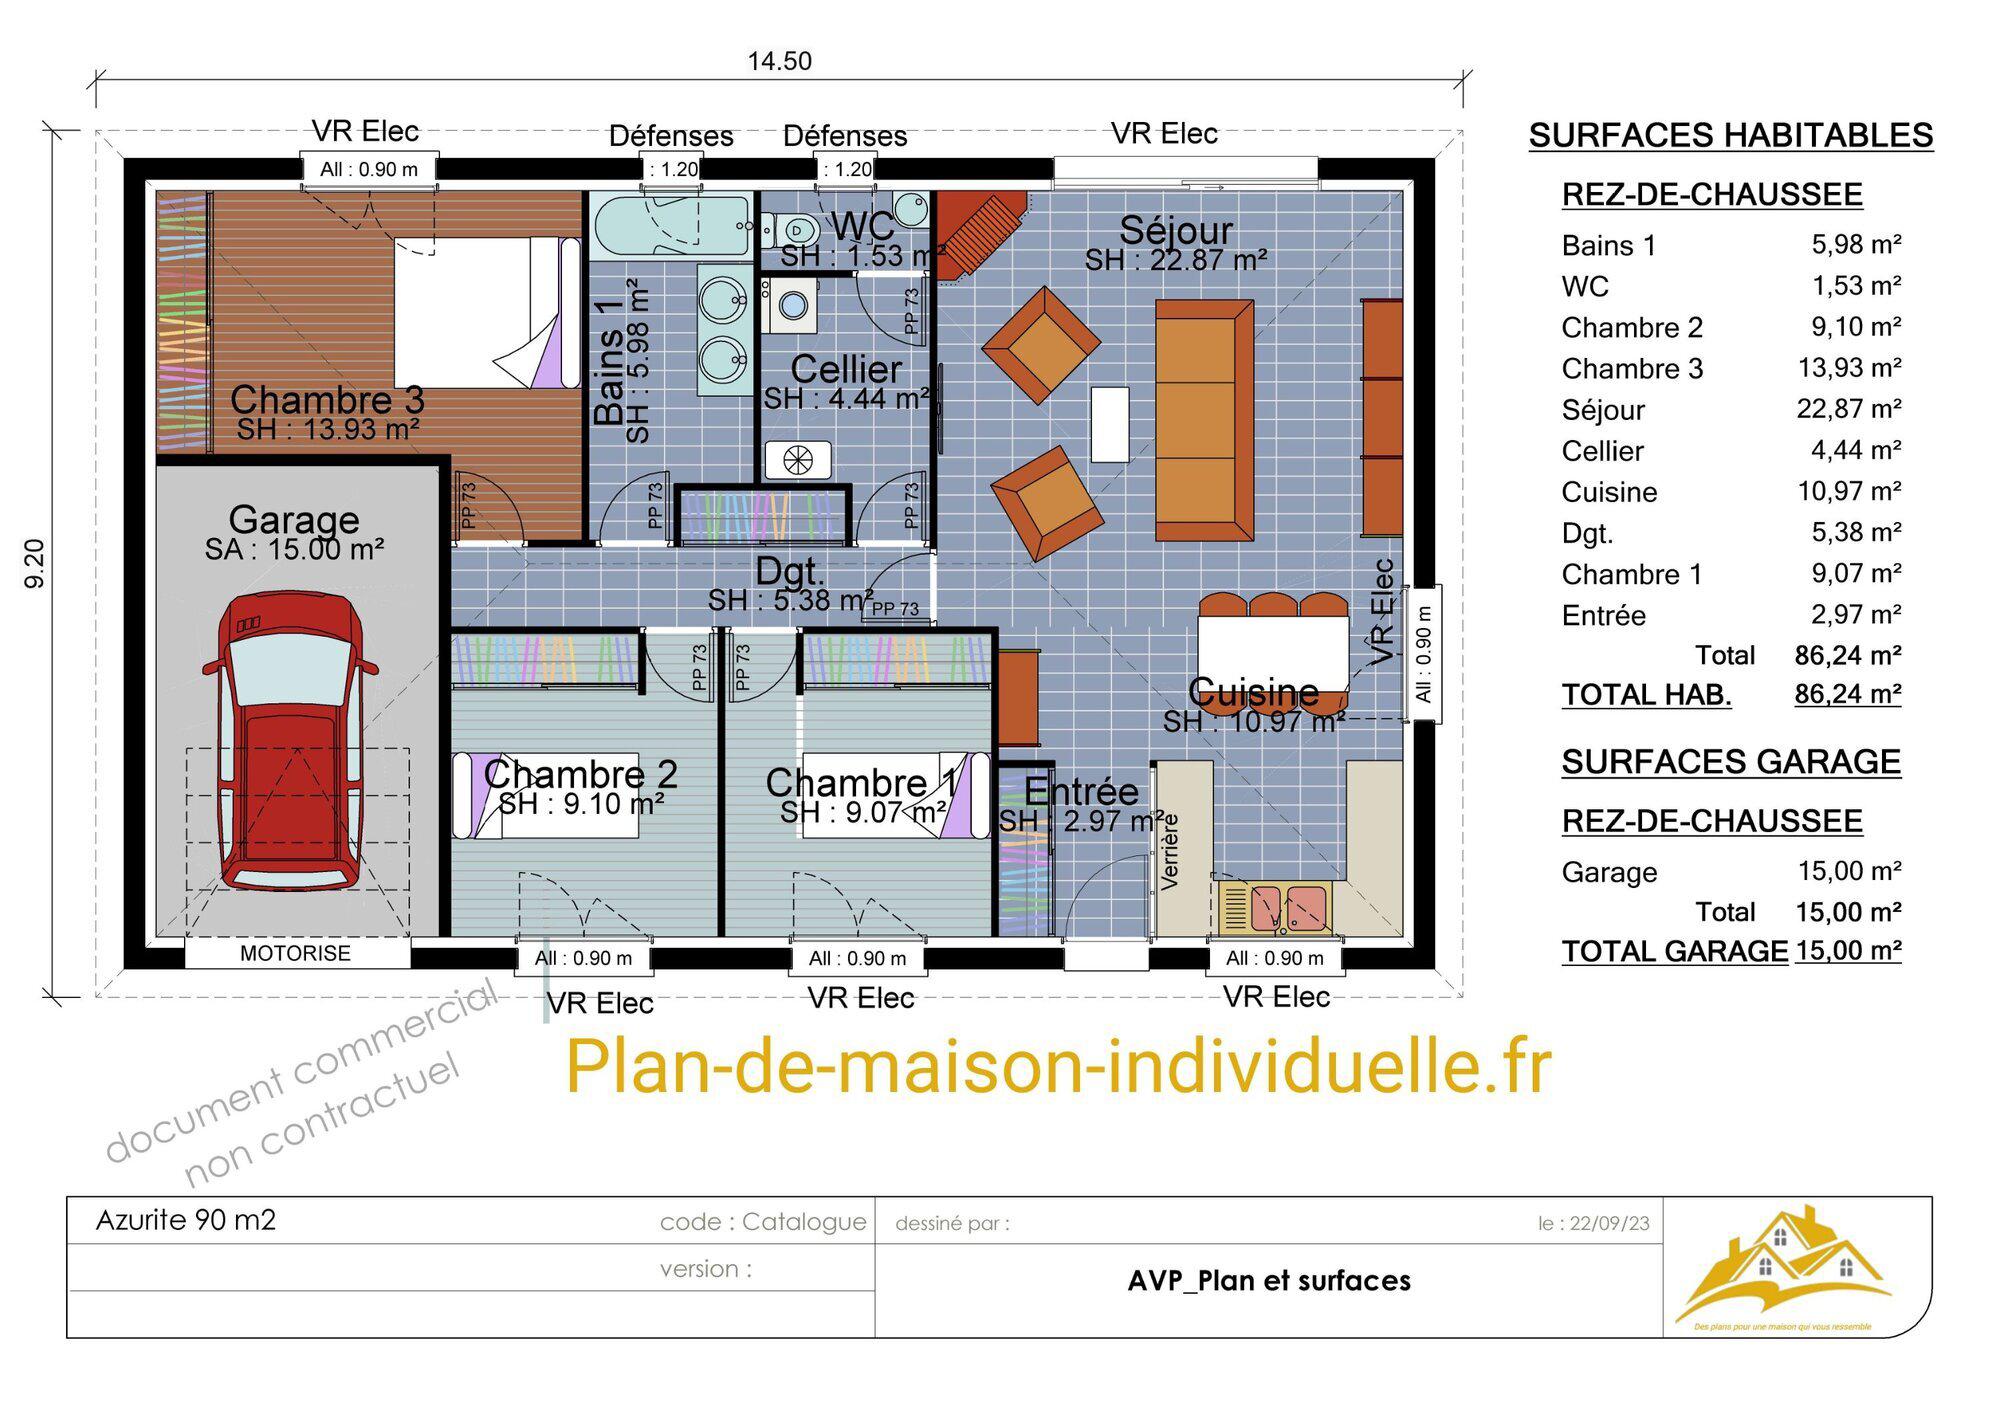 Images plan-de-maison-individuelle.fr